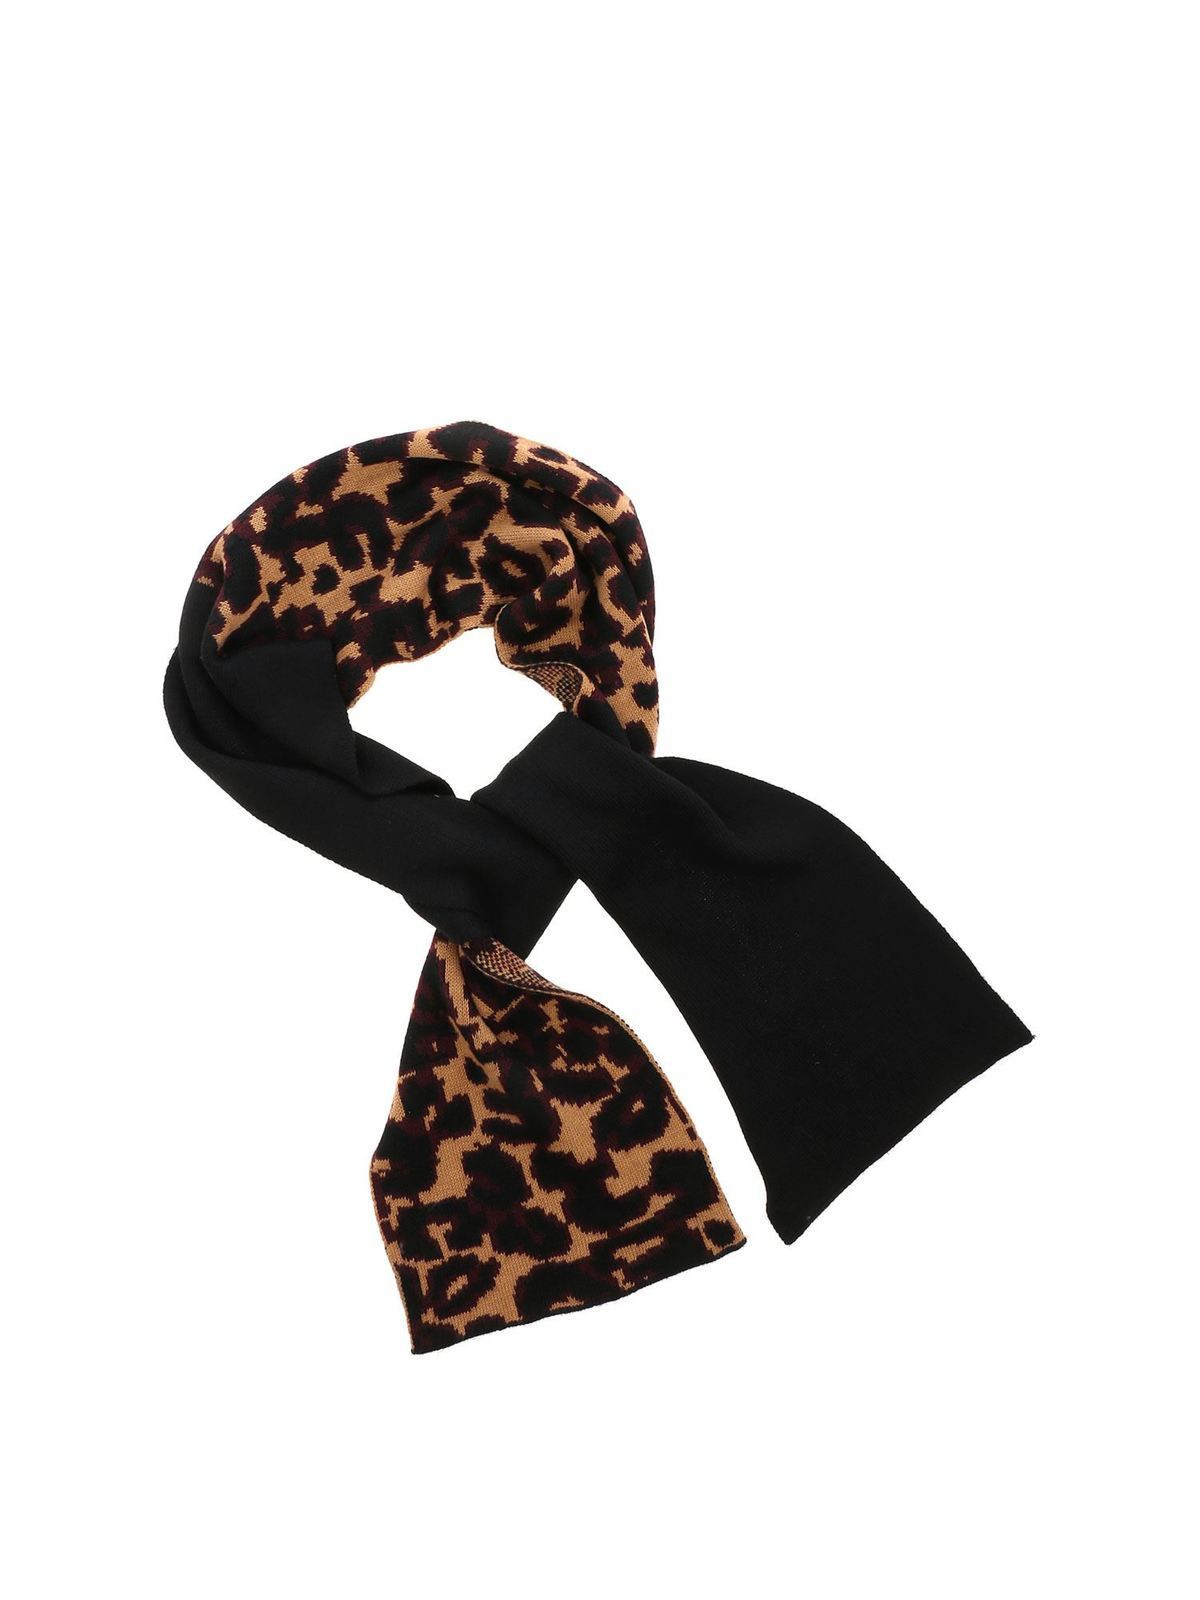 lulu guinness scarf sale